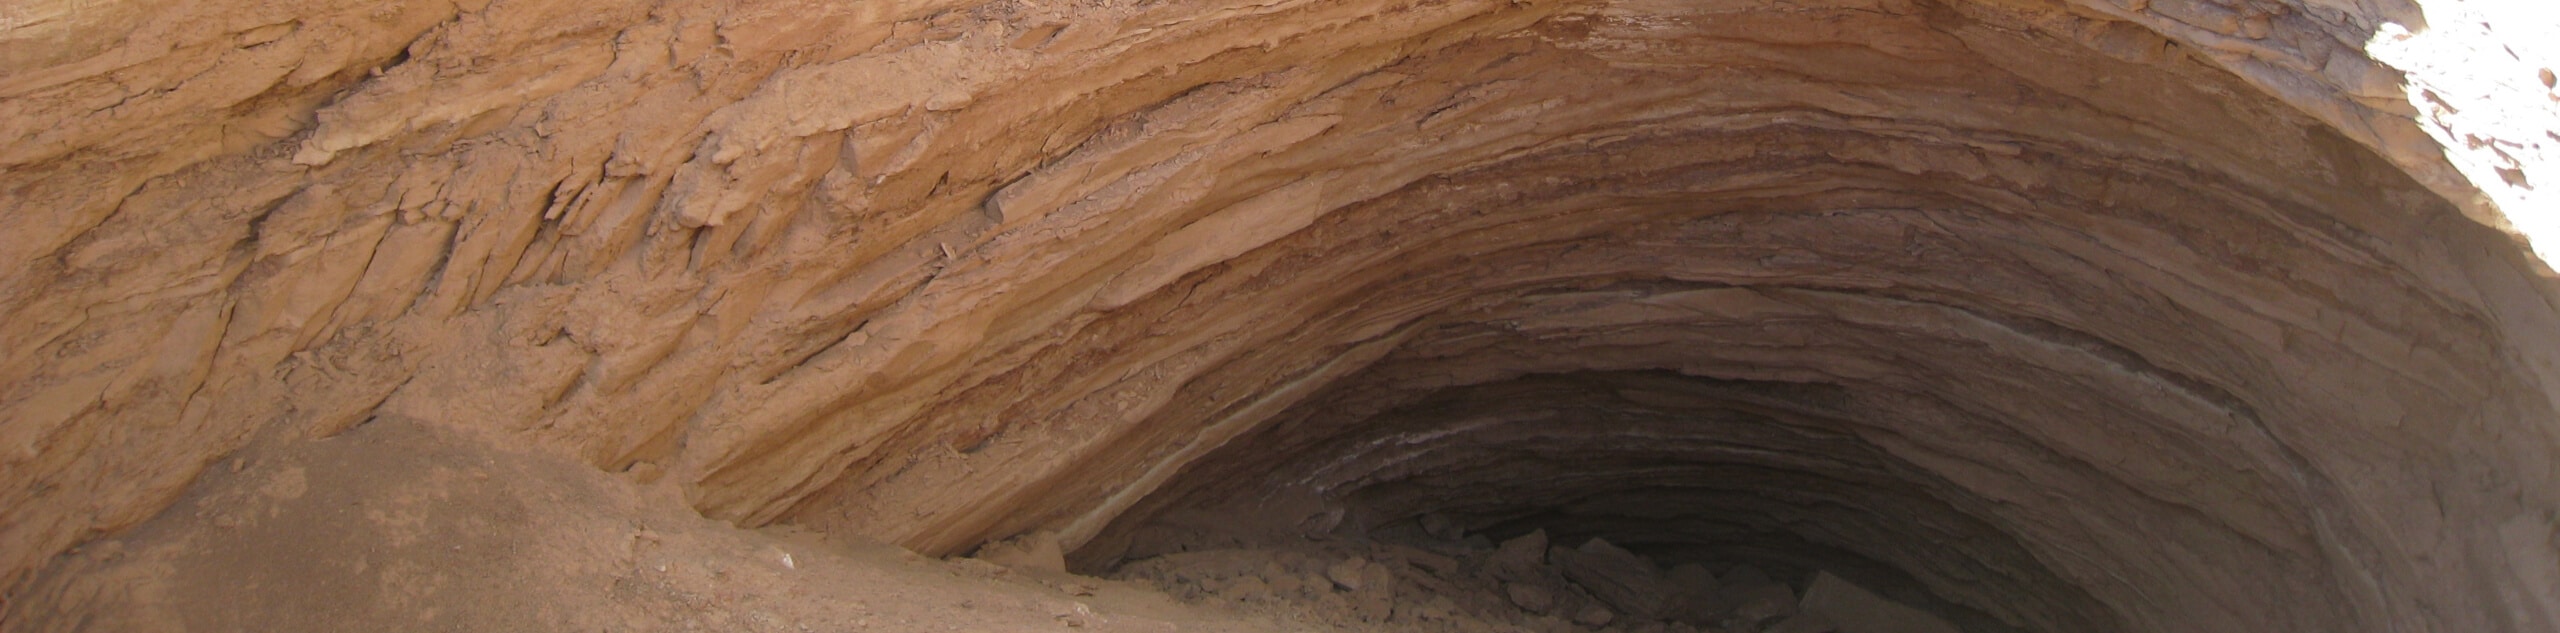 Gypsum Sinkhole